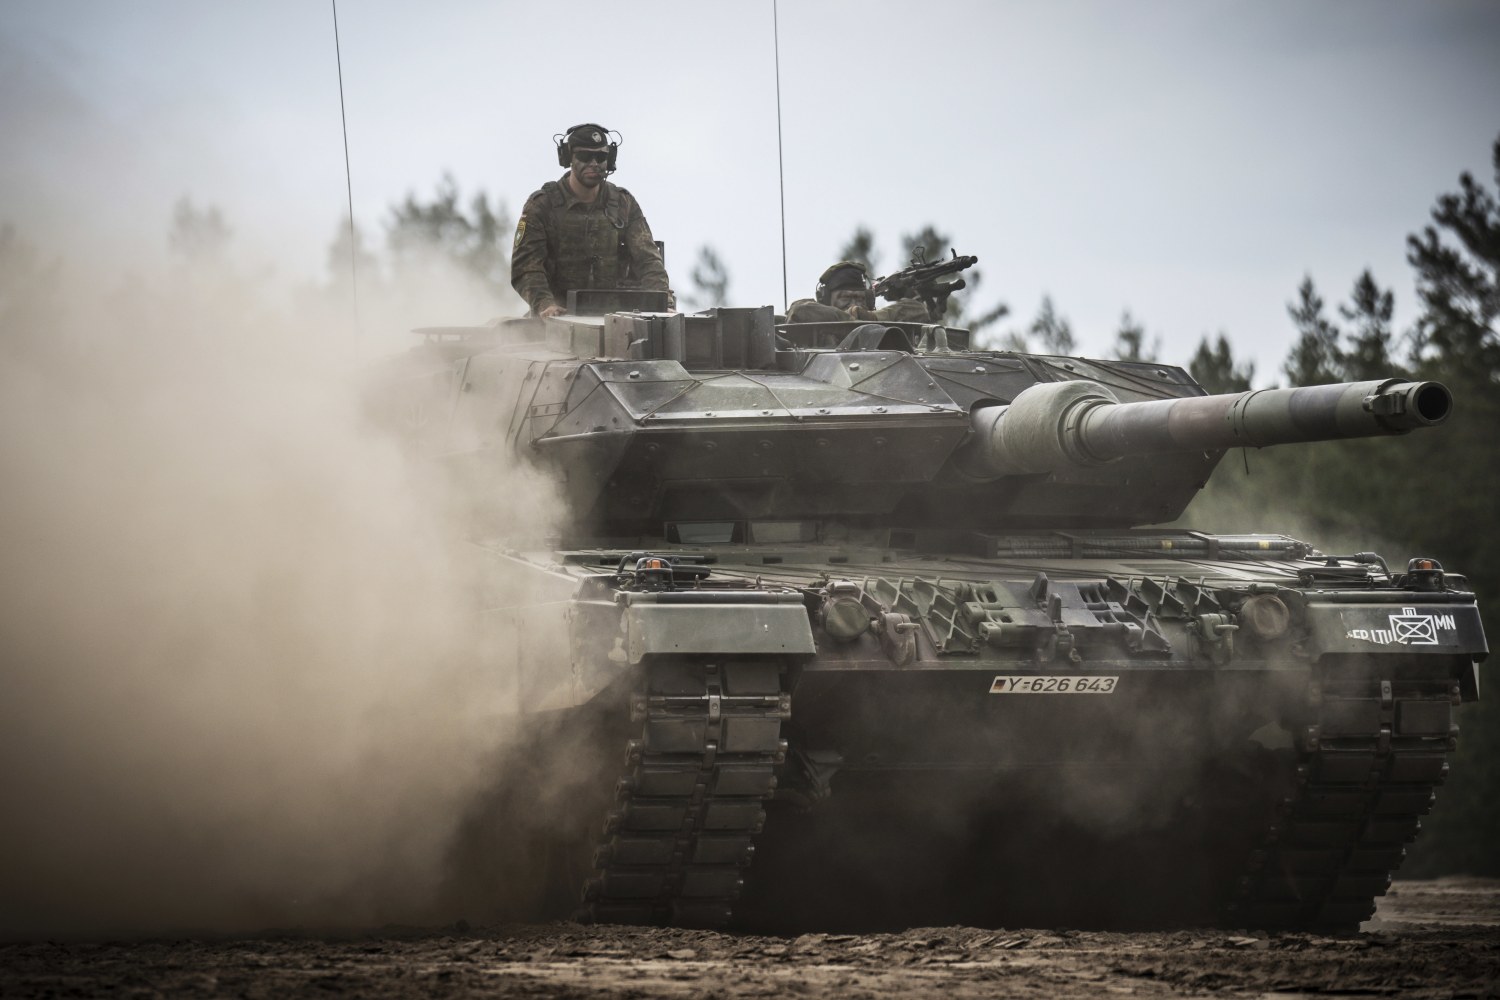 Germany sending Leopard tanks rift to Ukraine, allies ending among Western